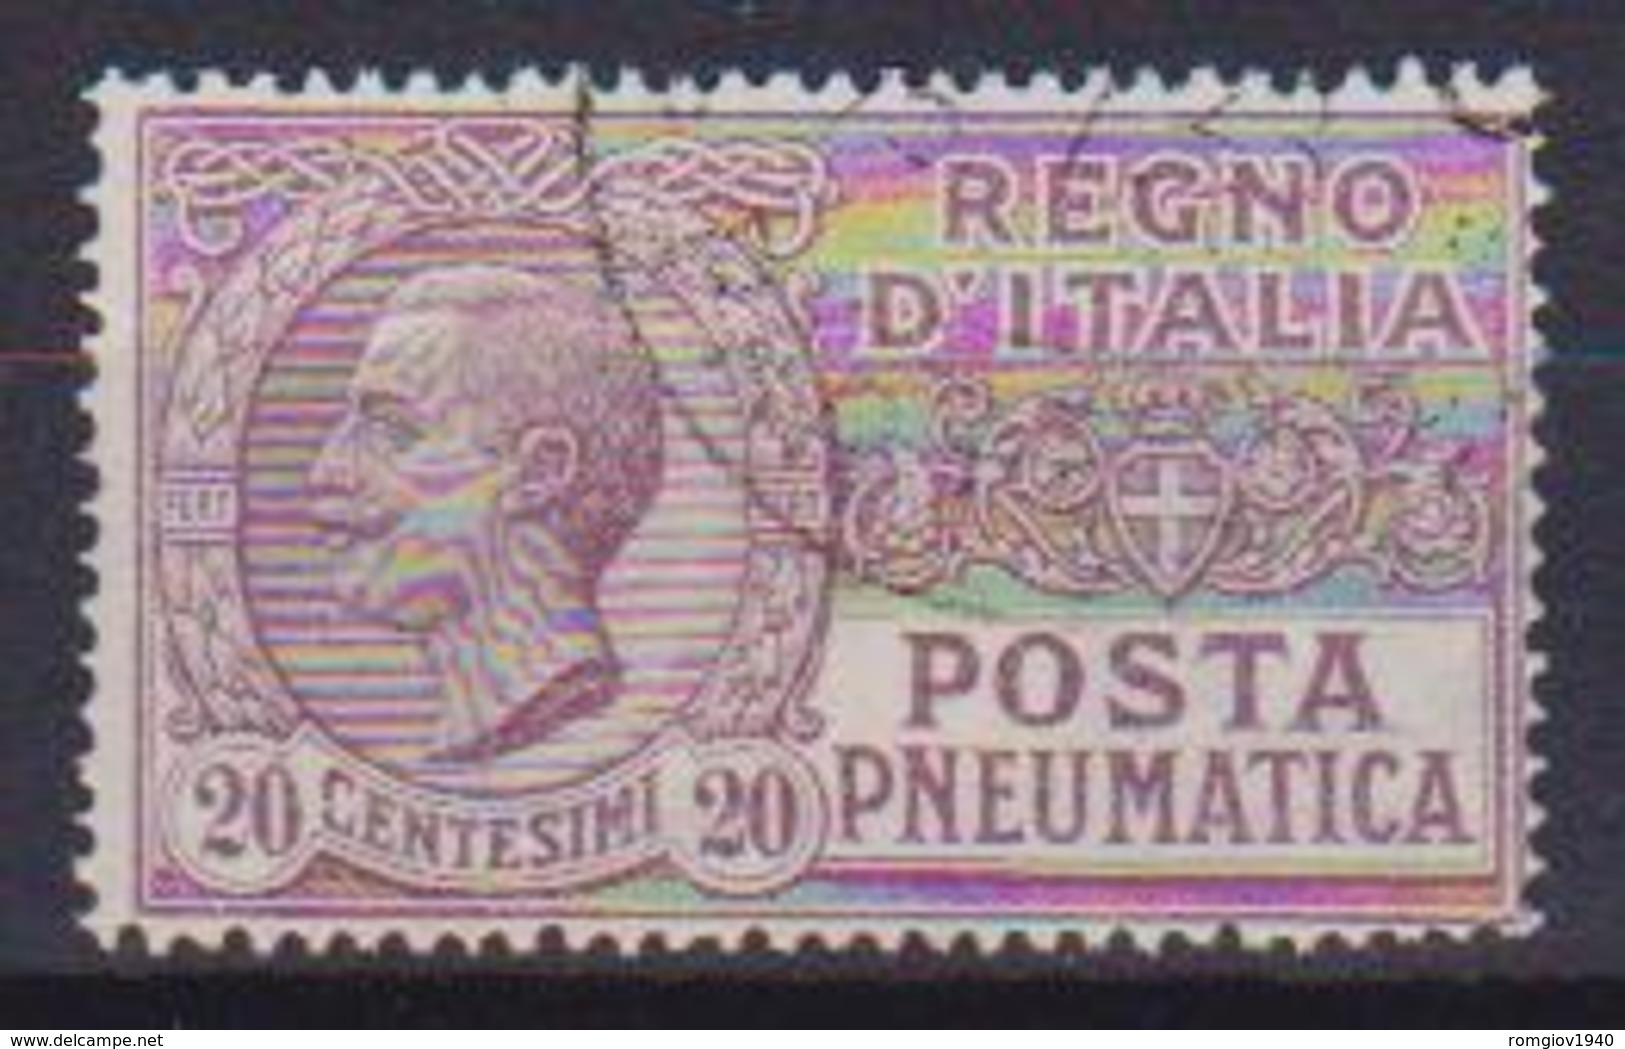 REGNO D'ITALIA POSTA PNEUMATICA 1925  TIPO DEL 1913-23 EFFIGE DI V.EMANUELE III SASS. 8 USATO VF - Pneumatische Post